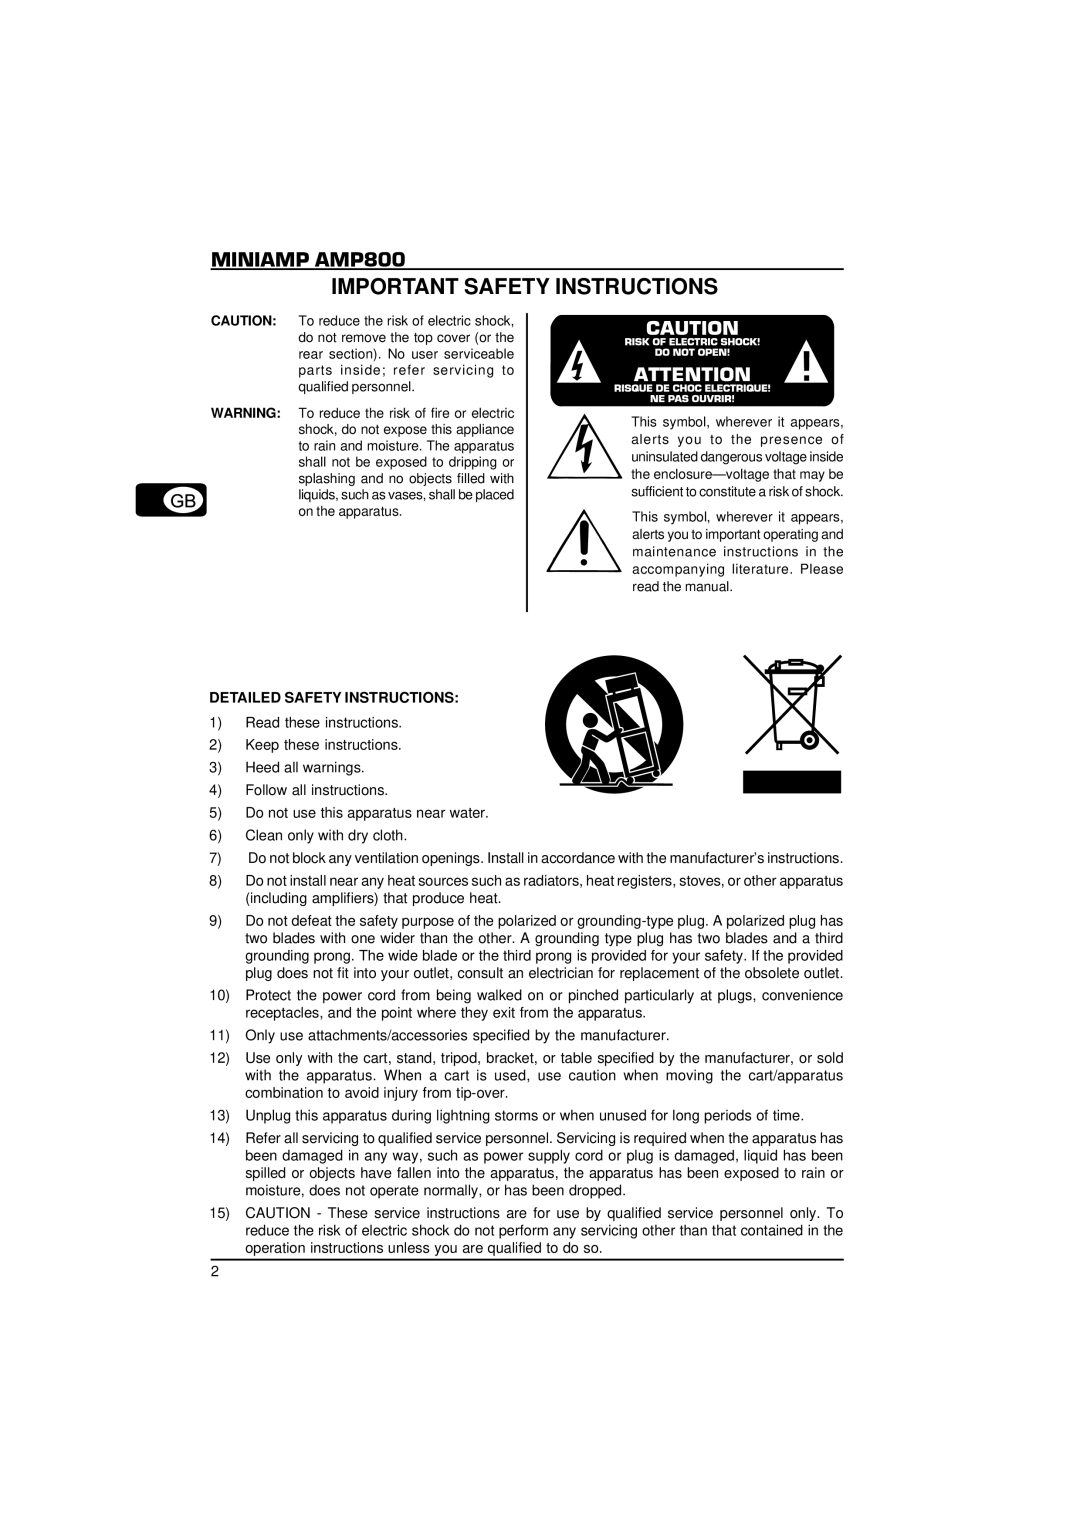 Behringer MINIAMP AMP800 user manual Important Safety Instructions, Detailed Safety Instructions 